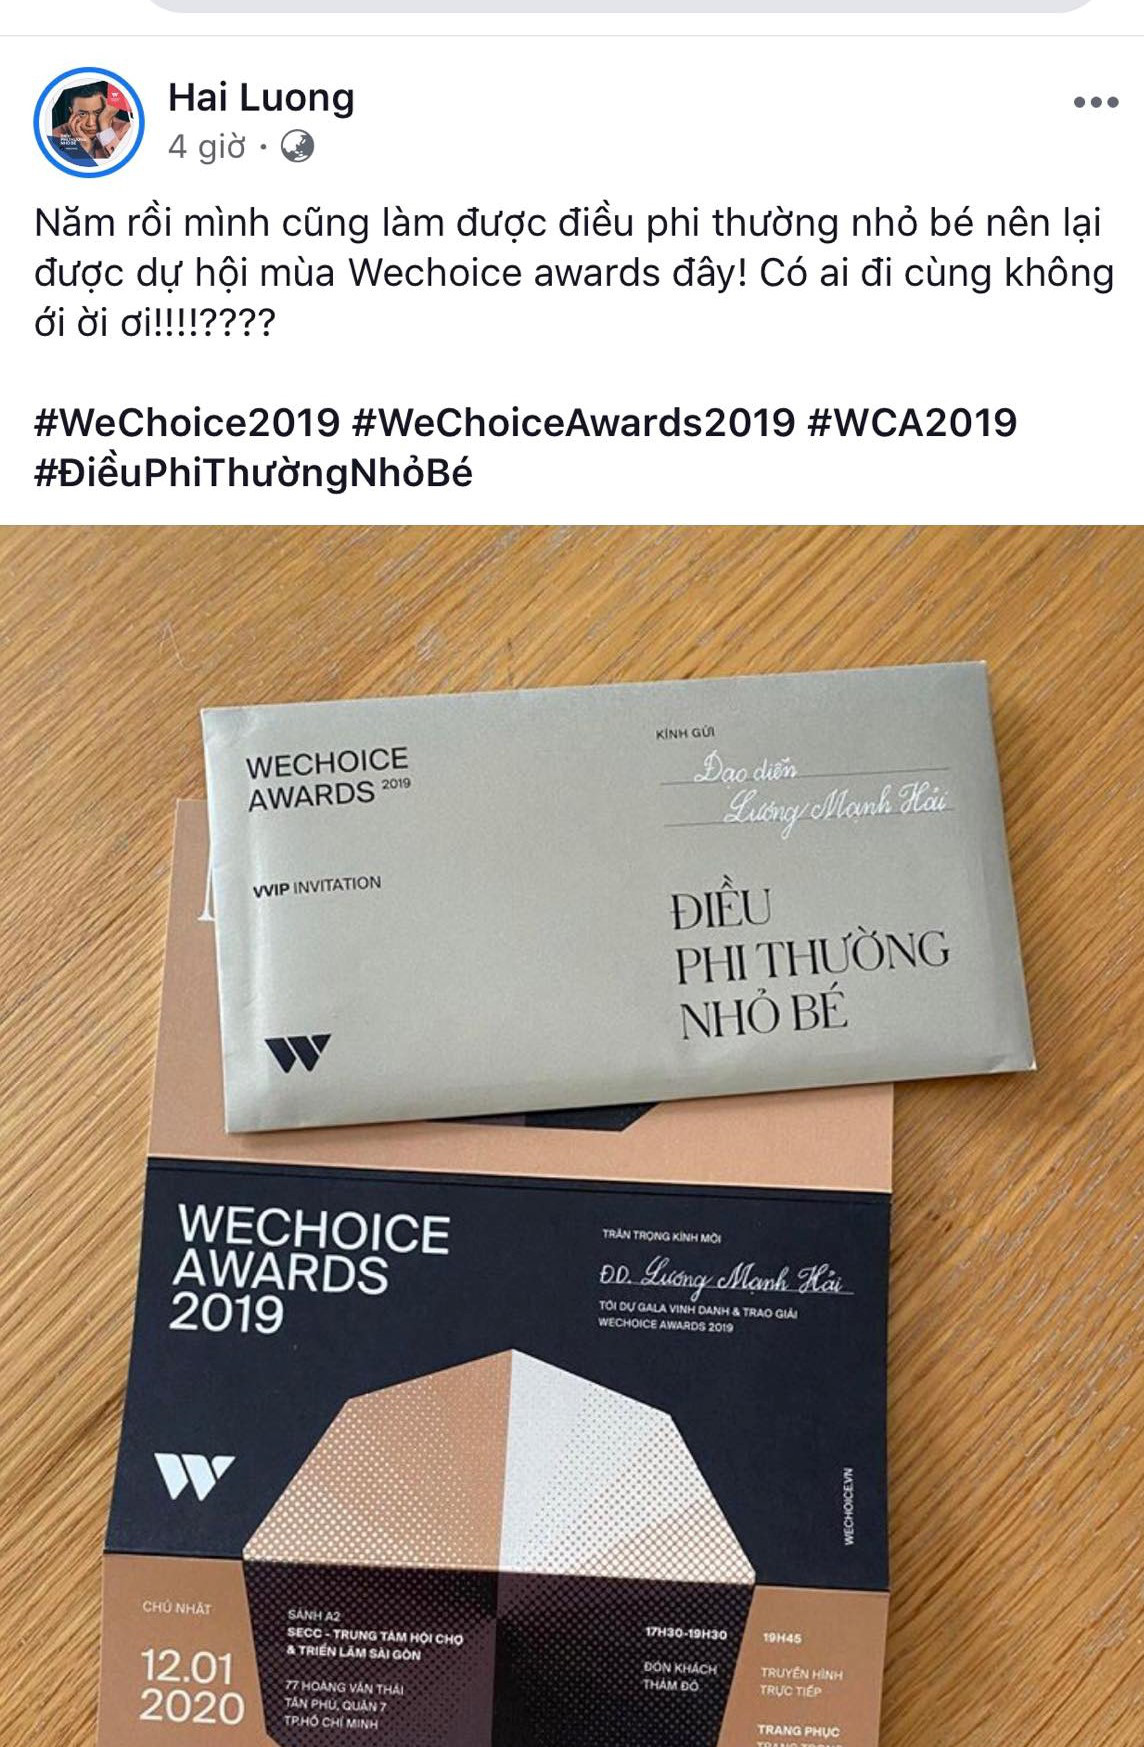 Cả dàn sao Vbiz đông đảo hào hứng khoe chiếc vé độc WeChoice Awards 2019: Điều phi thường ẩn trong xấp giấy nhỏ! - Ảnh 3.